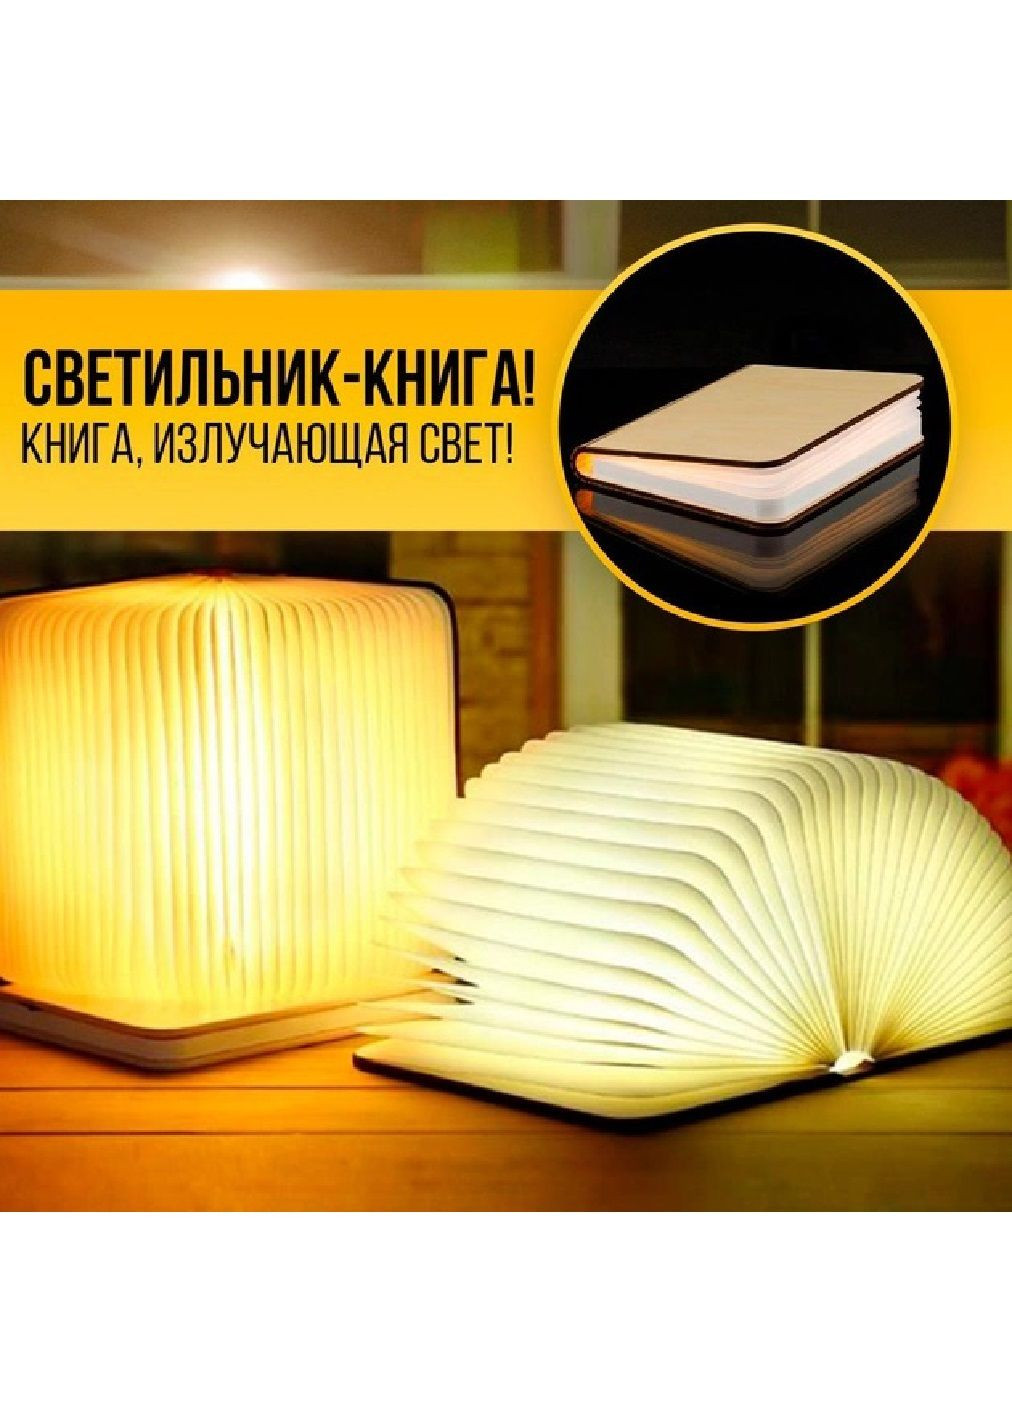 Светильник лампа ночник настольный складной аккумуляторный книга 3 режима свечения 18x12x8,5 см (476338-Prob) Unbranded (279327370)